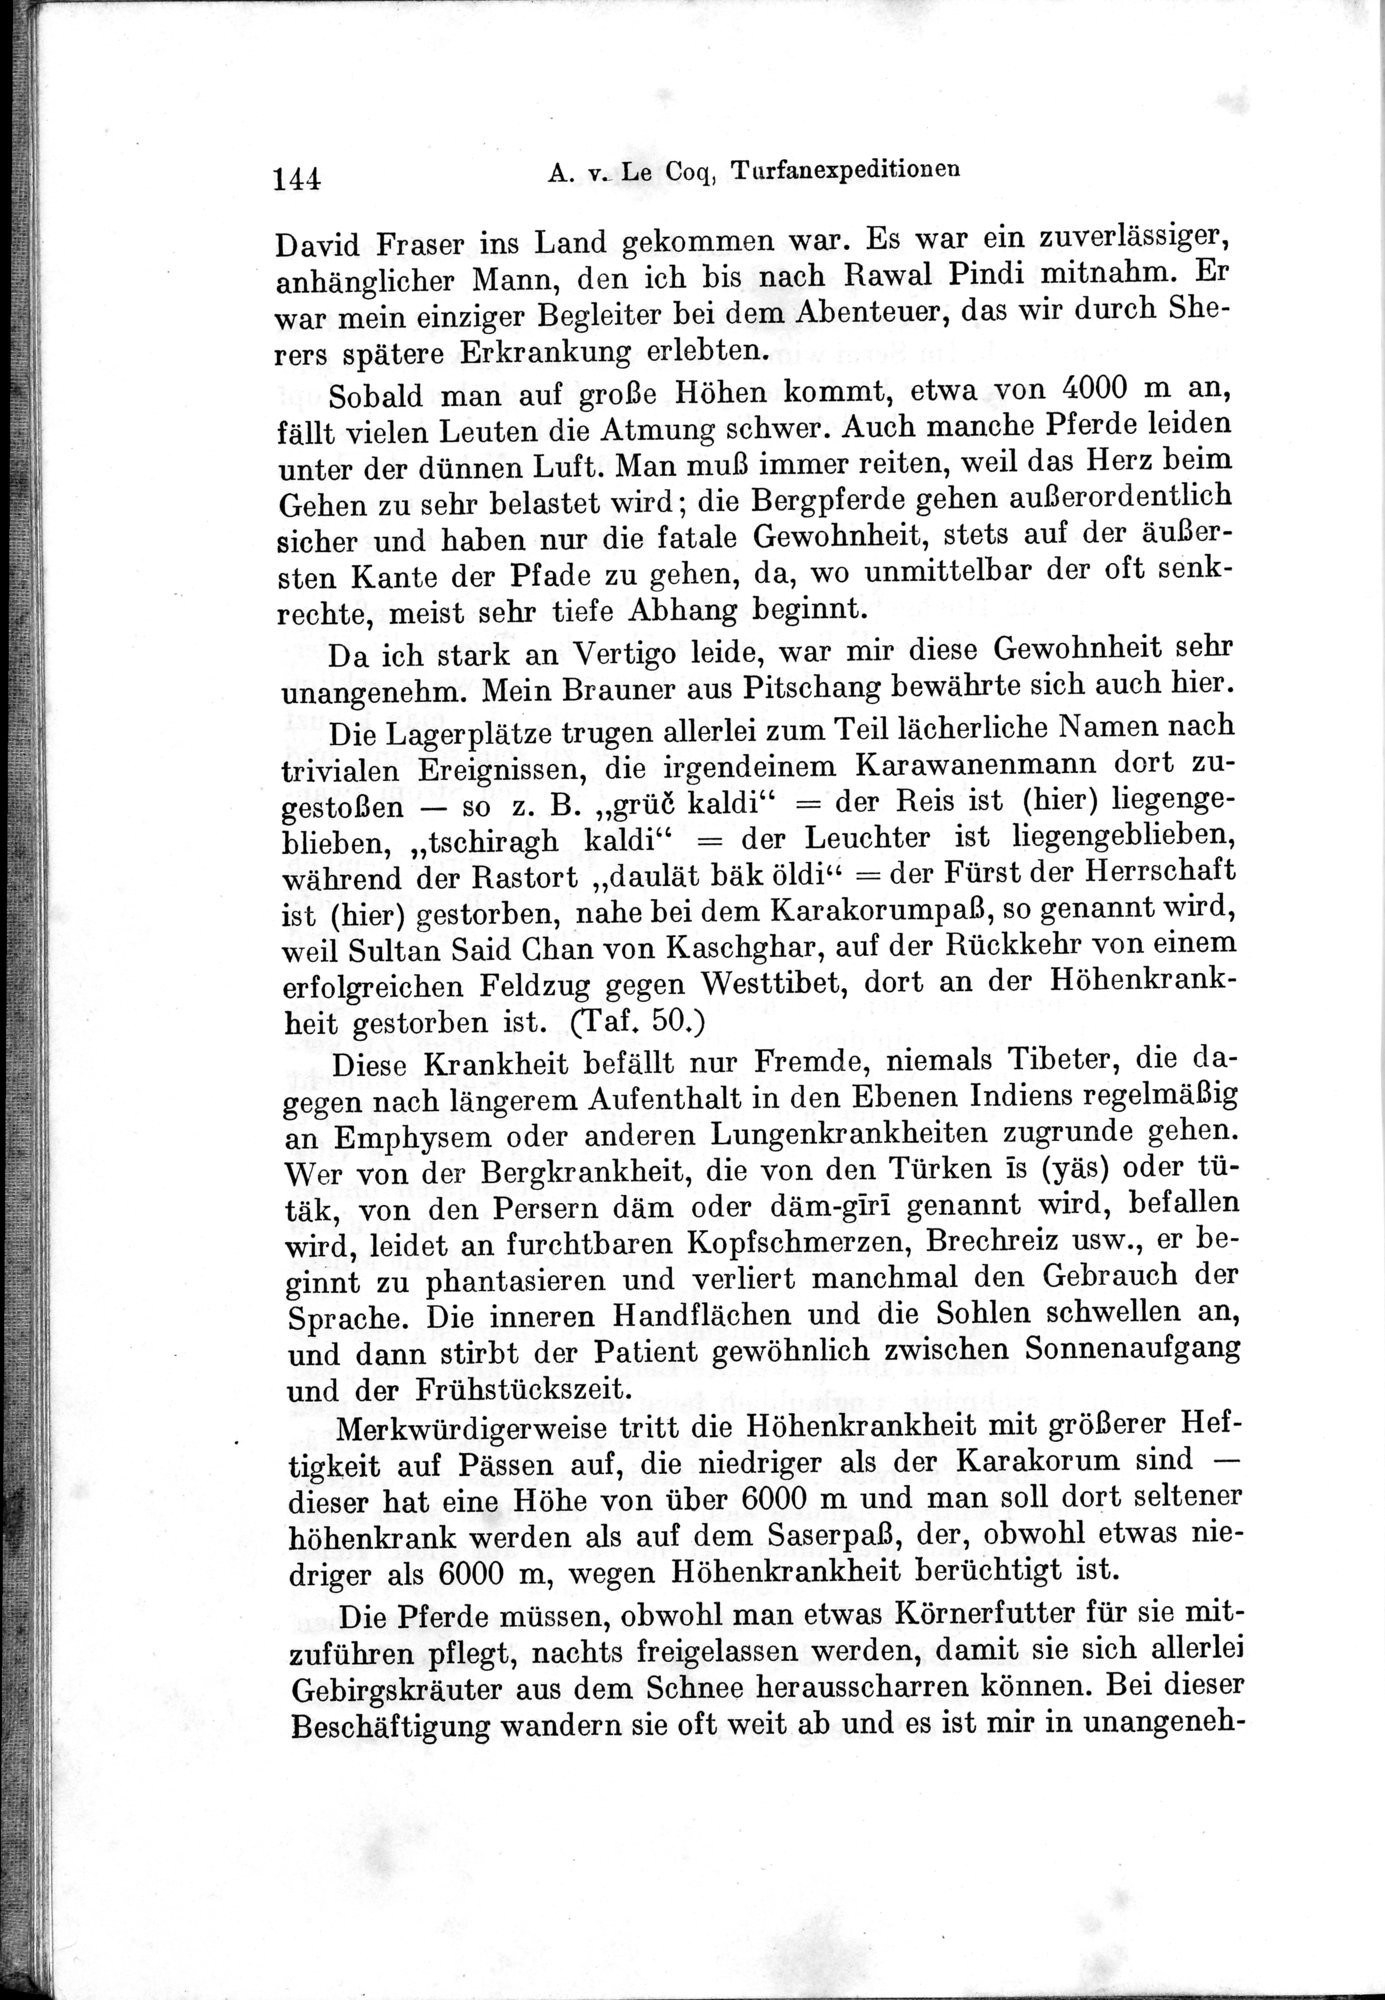 Auf Hellas Spuren in Ostturkistan : vol.1 / Page 206 (Grayscale High Resolution Image)